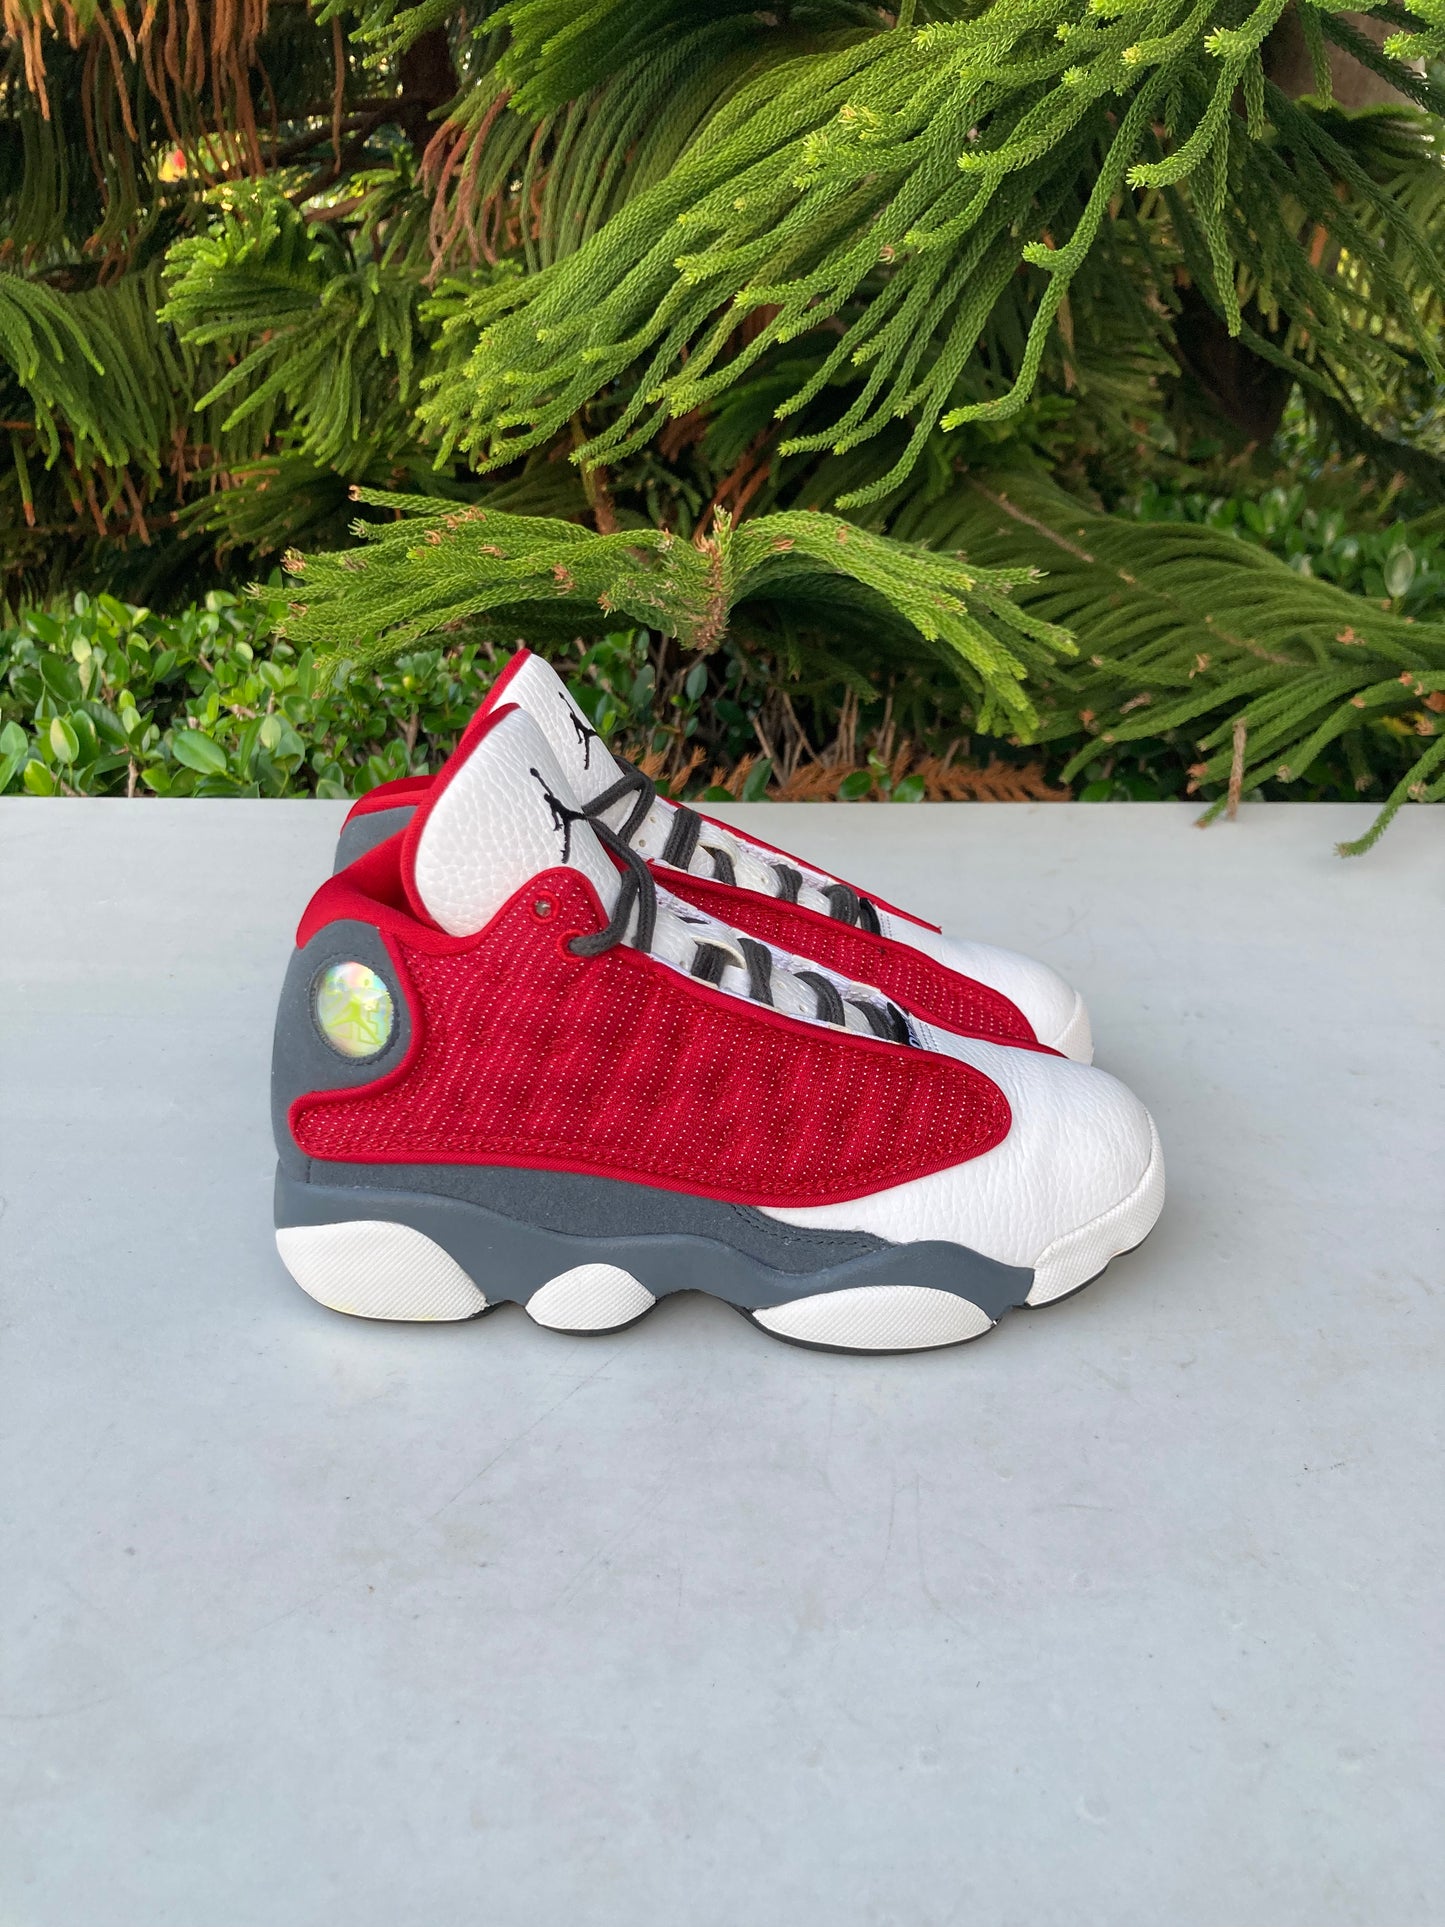 Nike Air Jordan 13 Retro Red Flint Grey (Boys)